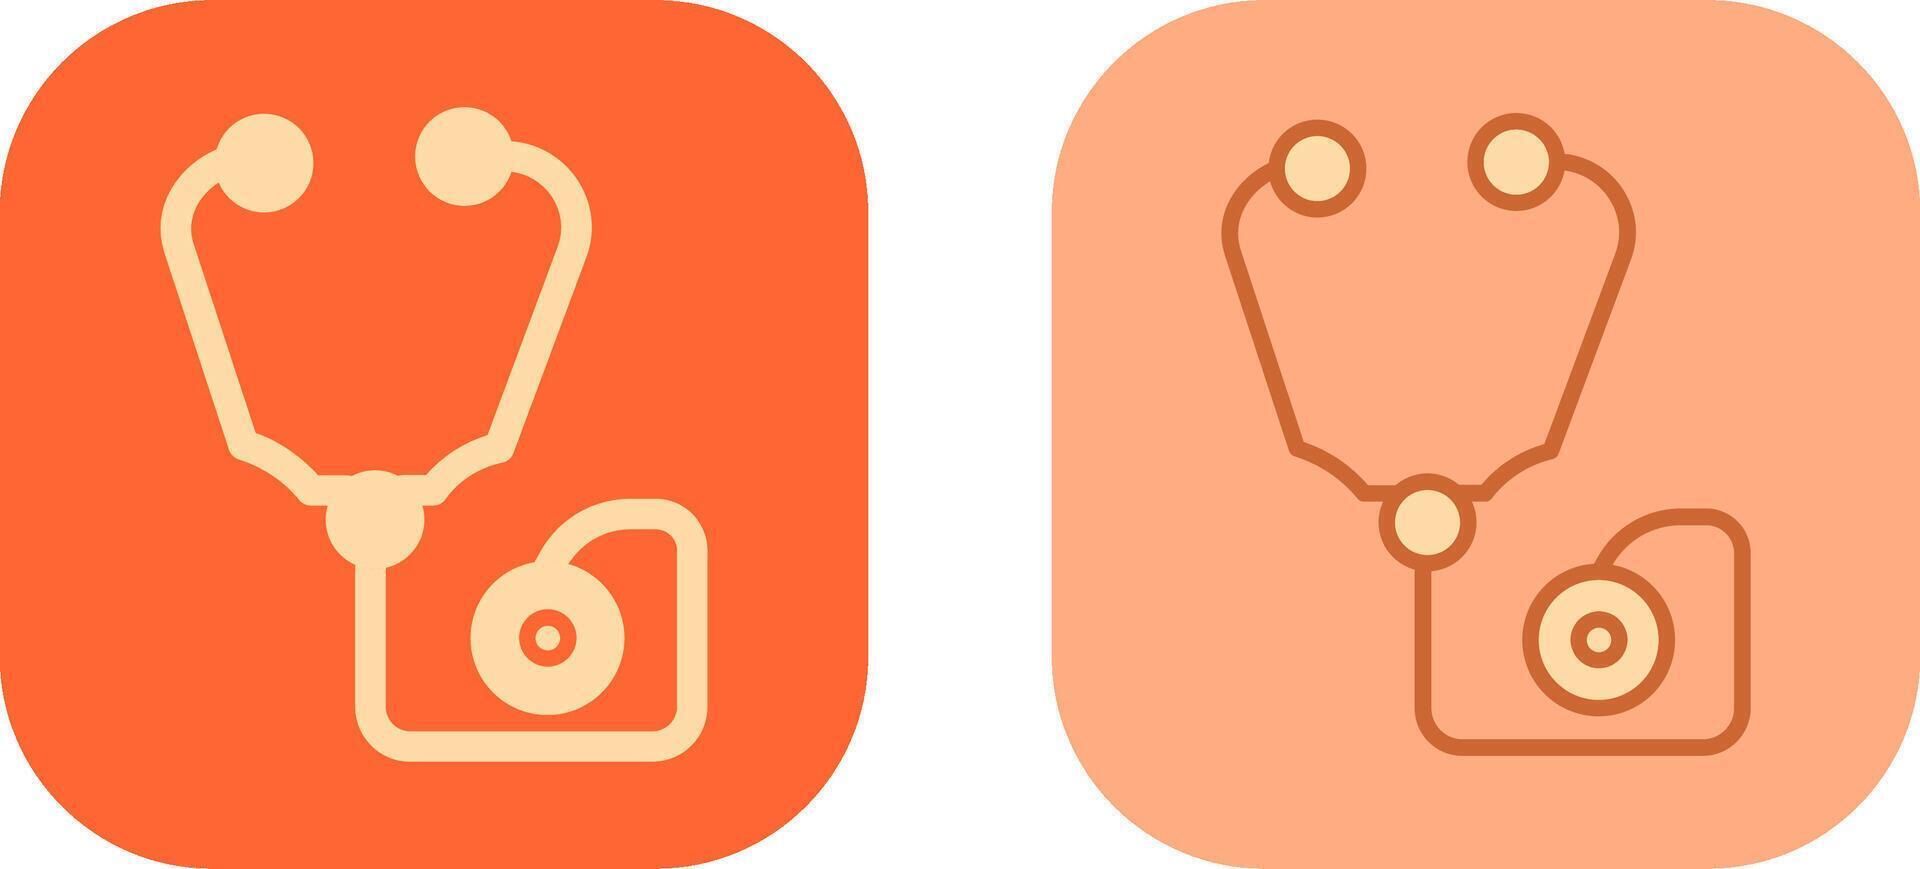 Stethoscope Icon Design vector